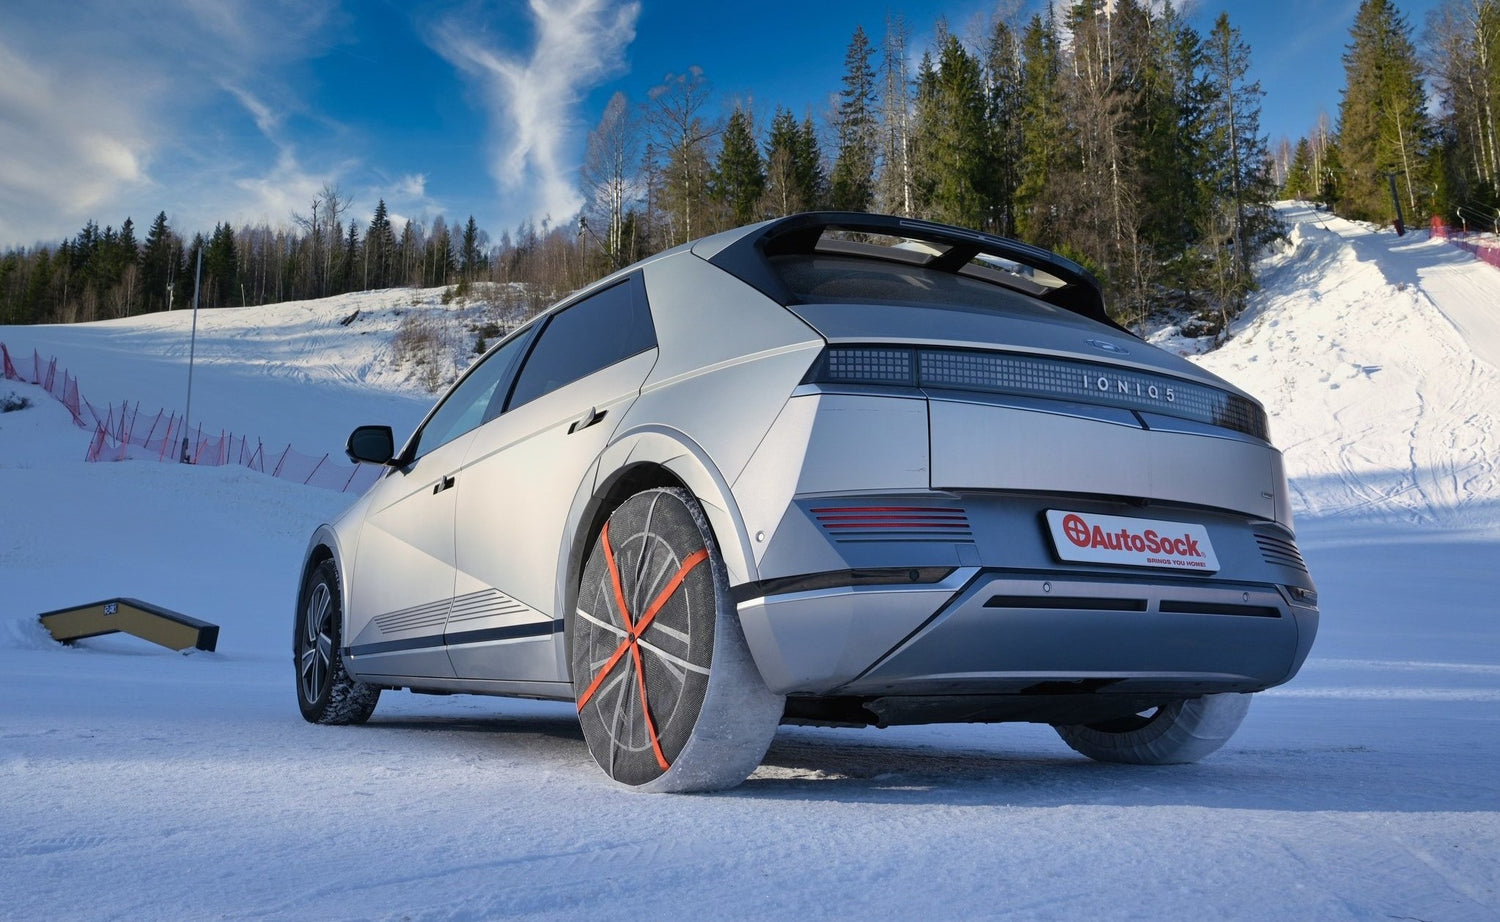 AutoSock montado en las ruedas traseras de un automóvil, de pie sobre la nieve en la naturaleza invernal